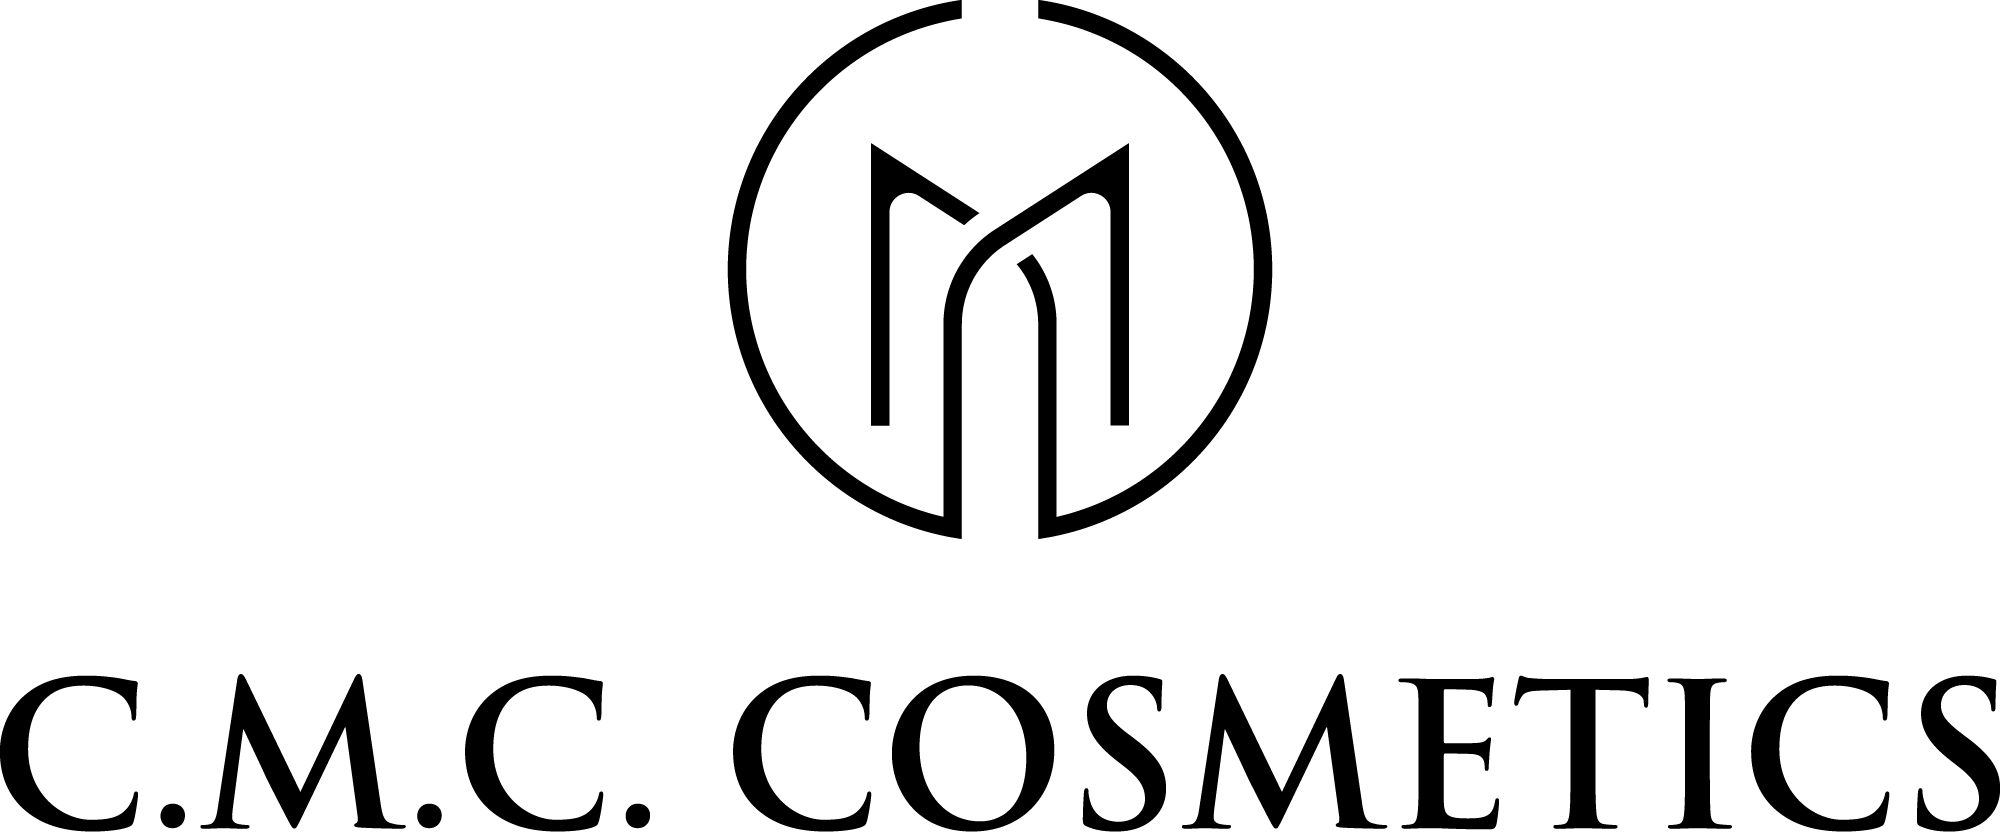 C.M.C. COSMETICS